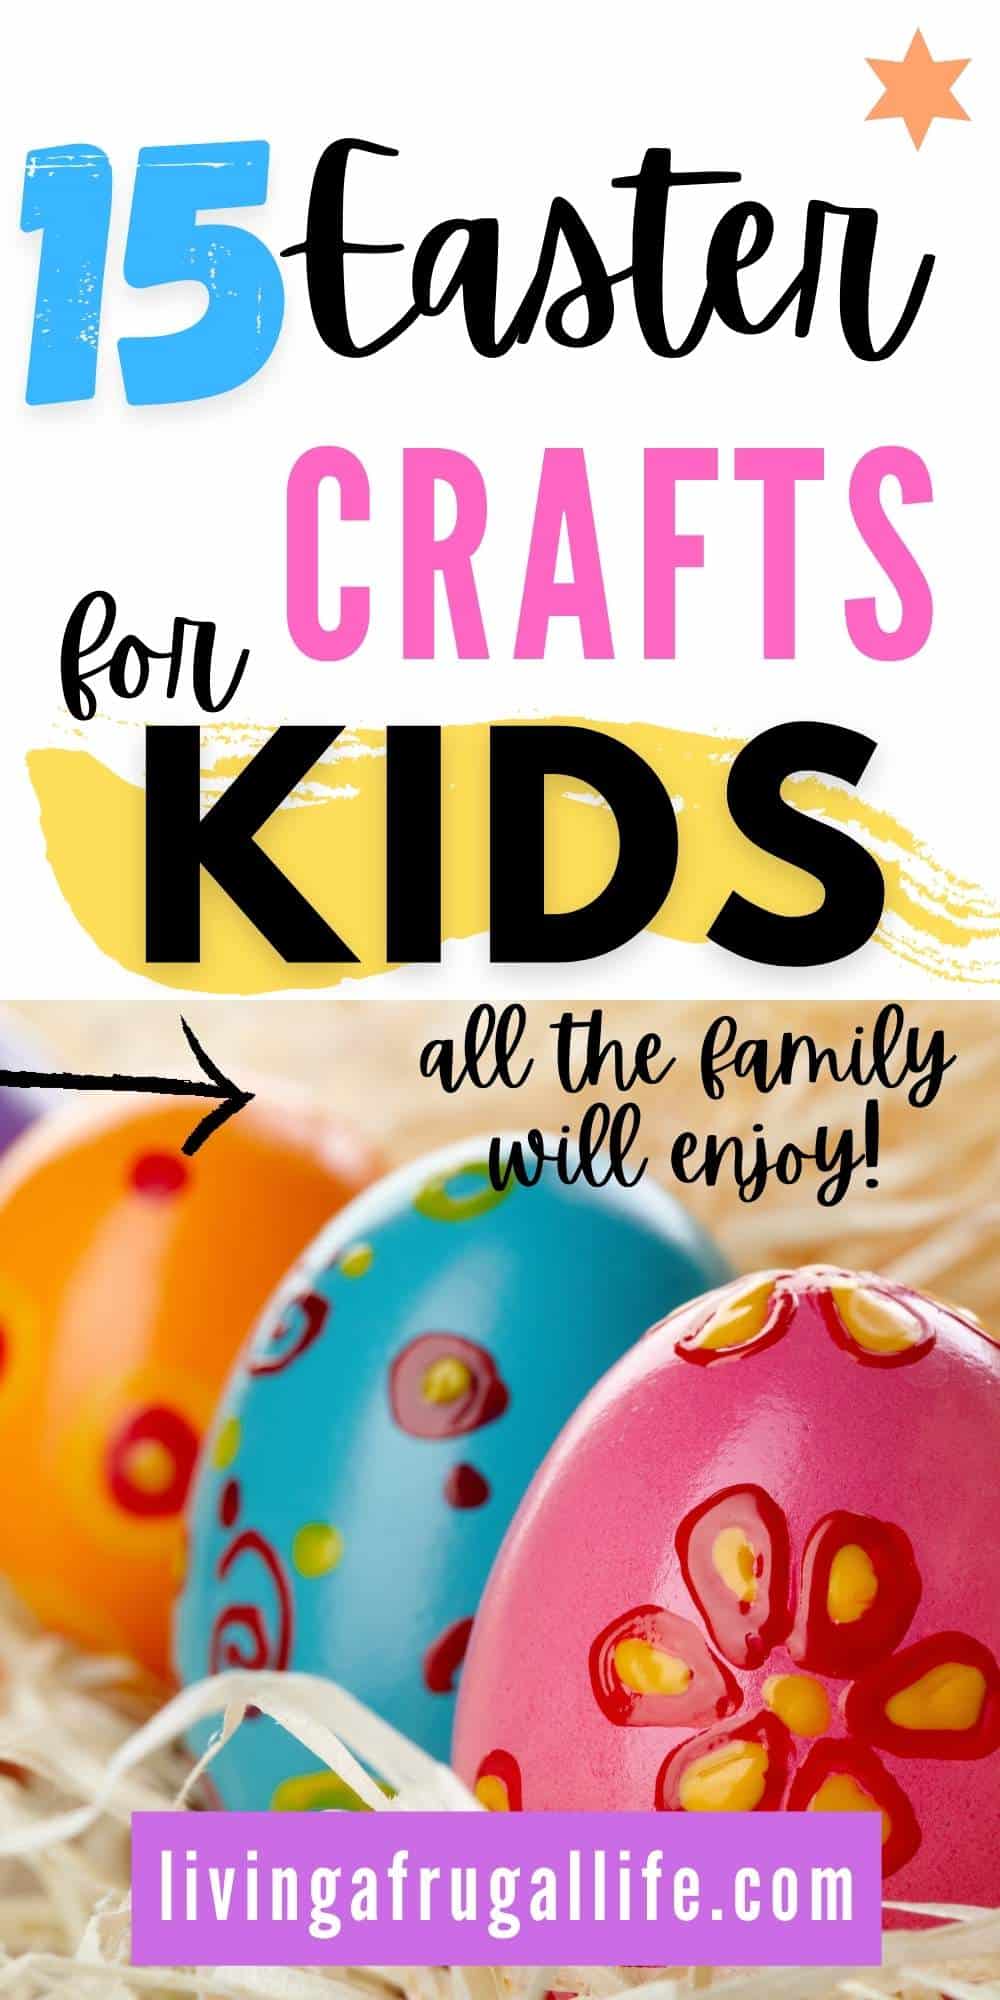 https://www.livingafrugallife.com/wp-content/uploads/2021/02/15-Easter-crafts-for-kids.jpg